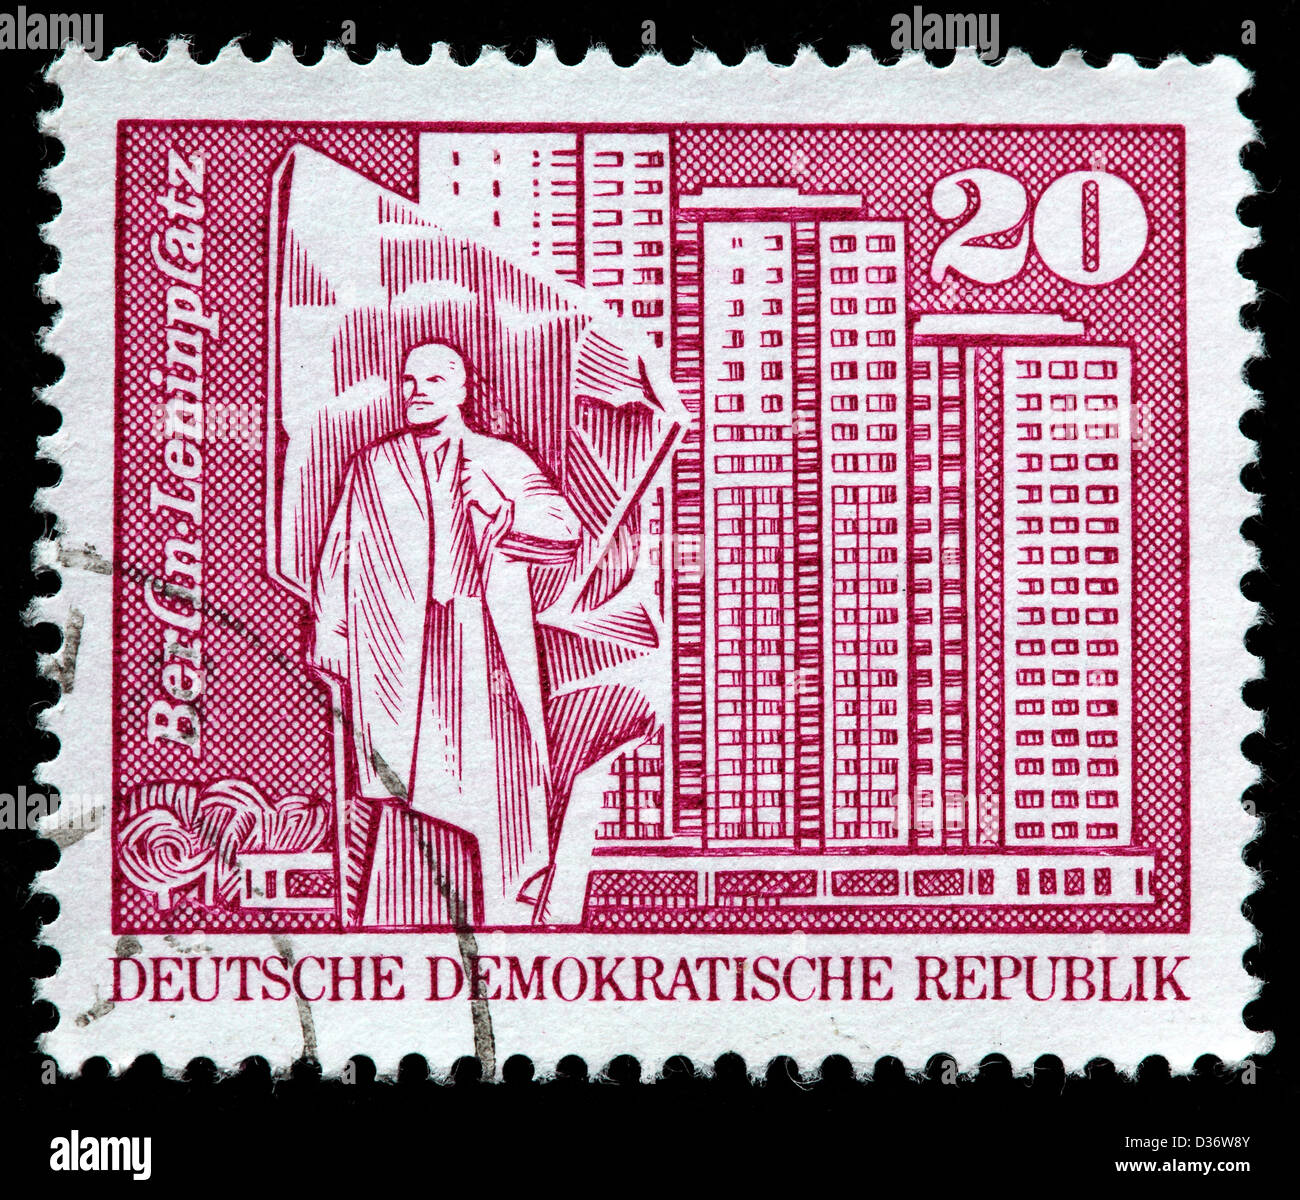 Lenin Square, Berlin, postage stamp, Germany, 1973 Stock Photo